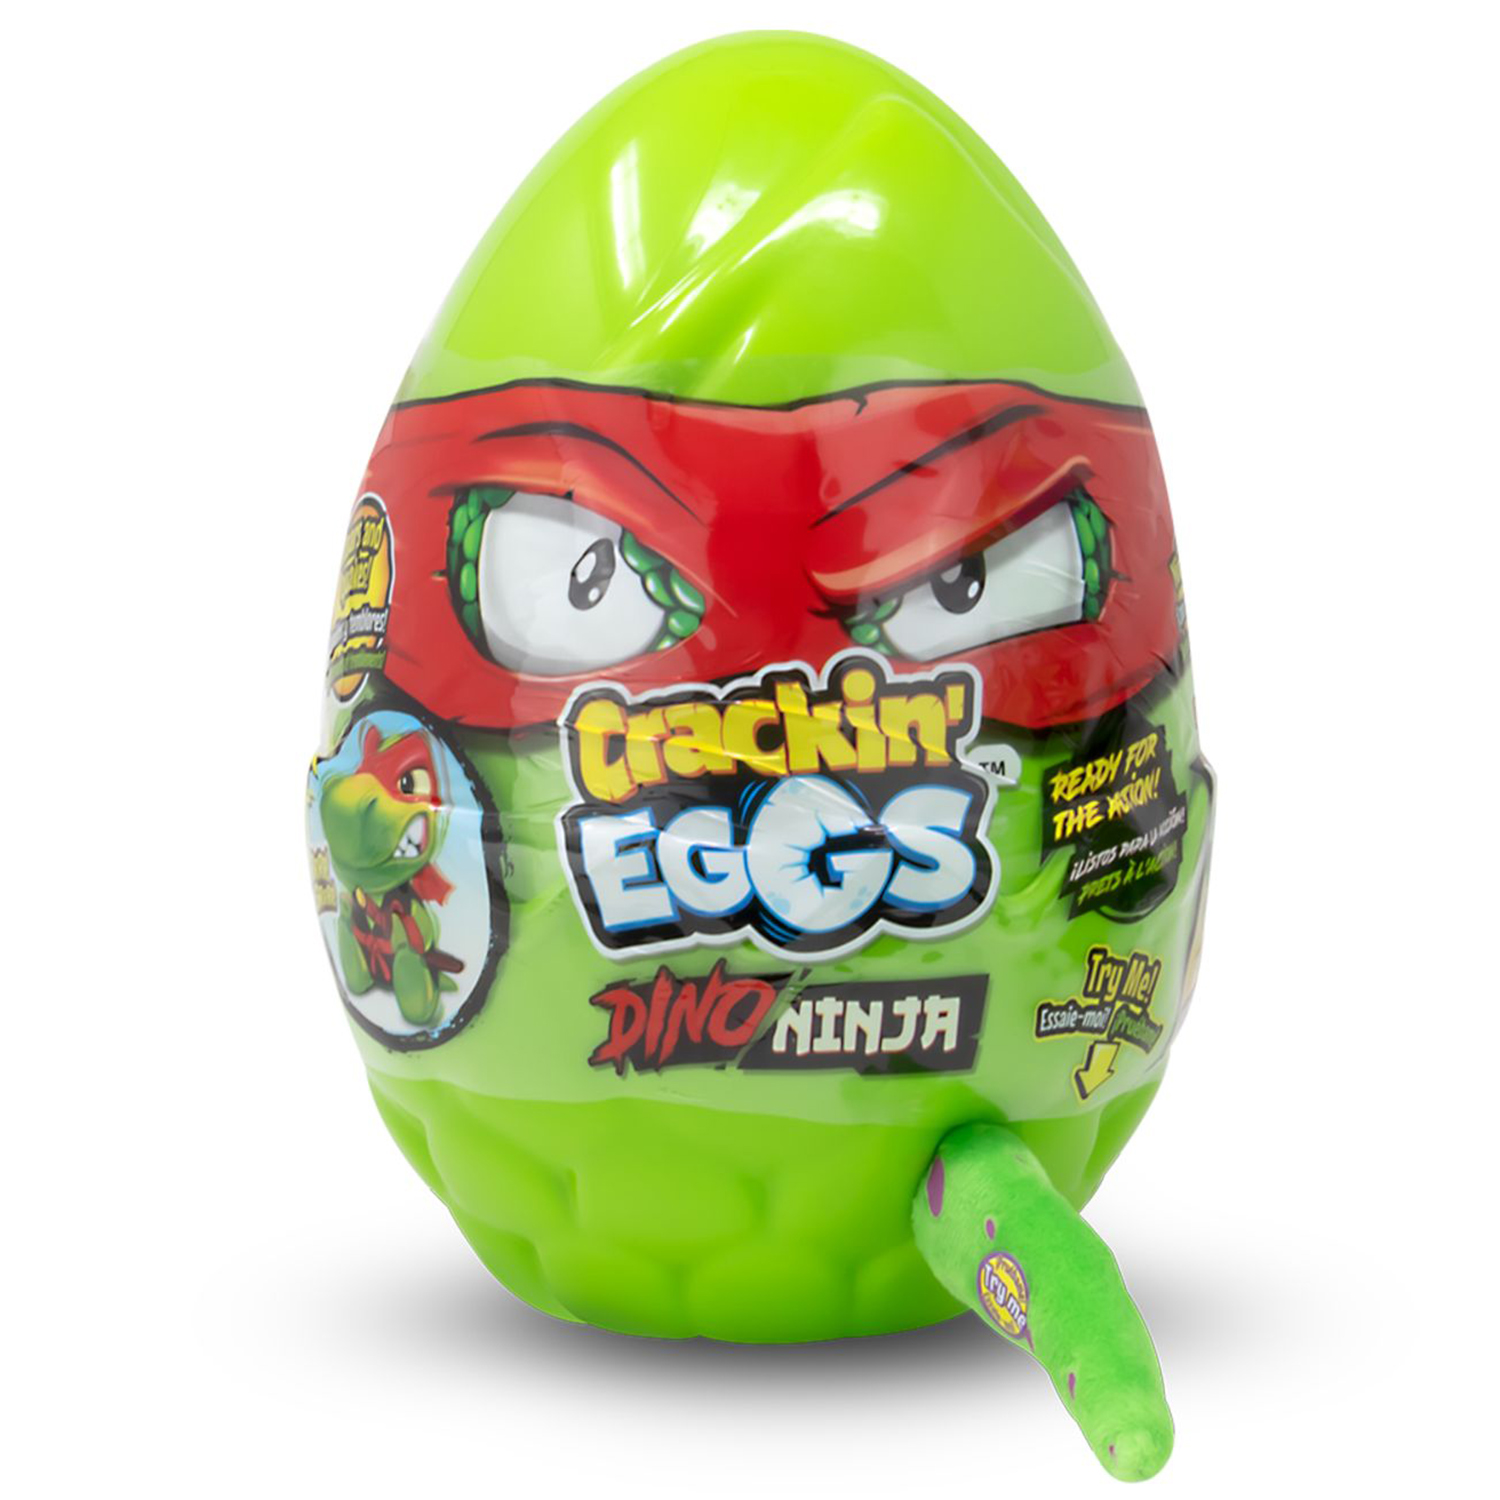 Мягкая игрушка Crackin' Eggs Динозавр зеленый в яйце, серия Ниндзя, 22 см мягкая игрушка crackin eggs динозавр зеленый в яйце серия парк динозавров 22 см